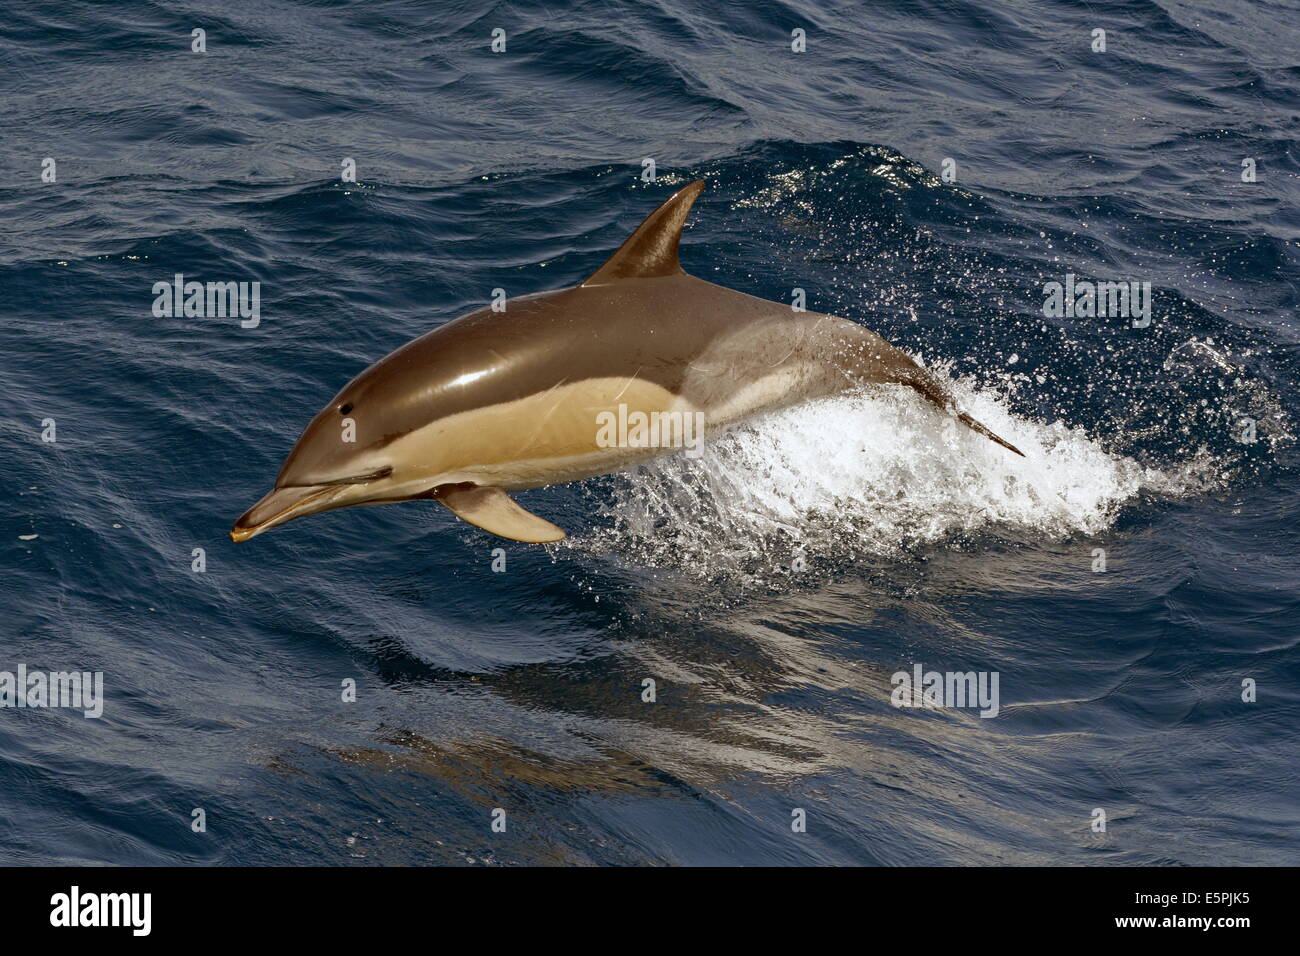 A breve becco delfino comune (Delphinus delphis) porpoising chiaro dell'acqua, Atlantico nordorientale, offshore Marocco Foto Stock